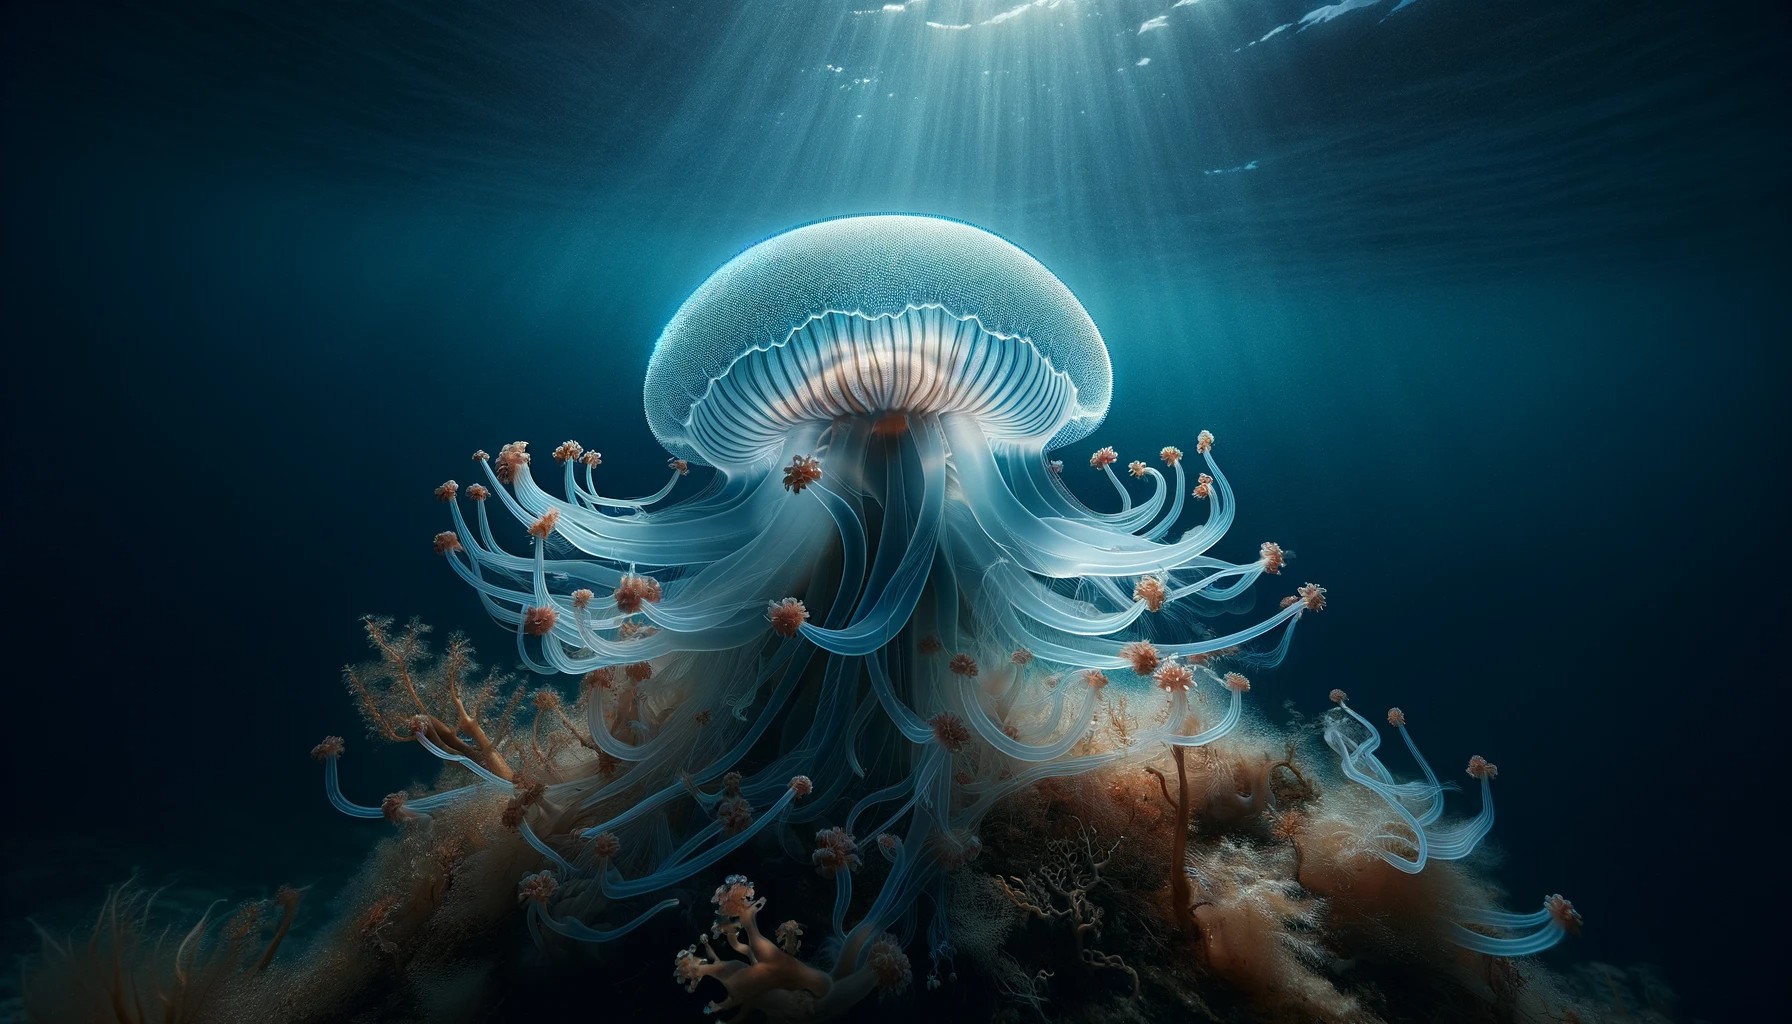 Una medusa Turritopsis dohrnii, con su cuerpo translúcido y tentáculos delicados, flotando en las profundidades del océano.